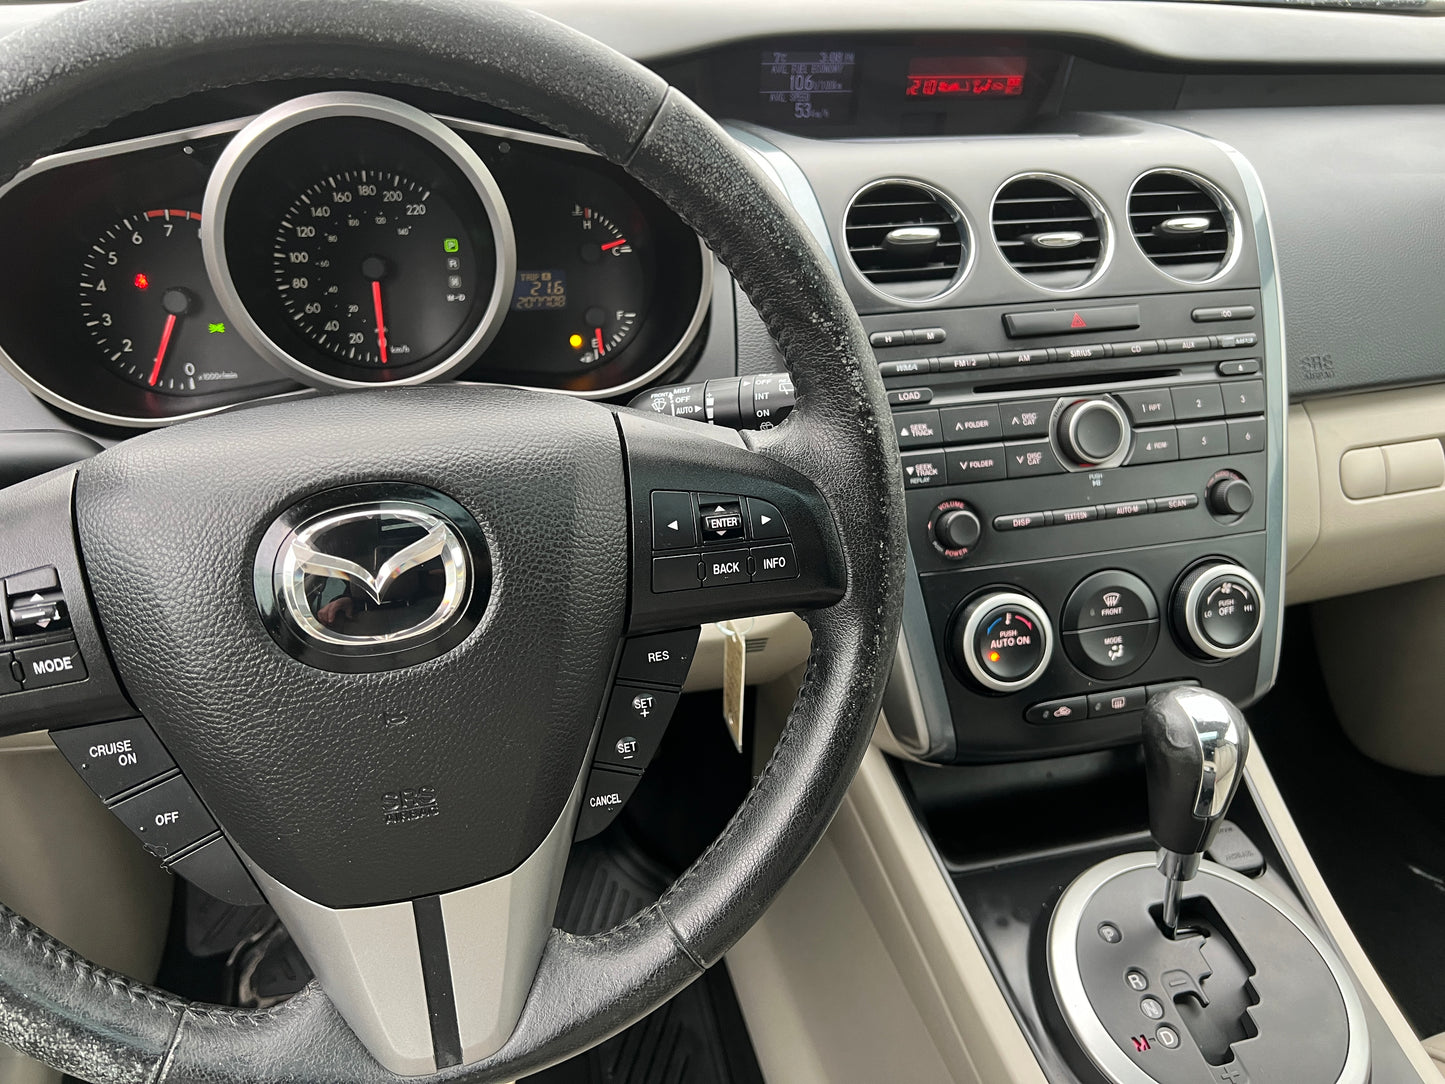 2010 Mazda CX-7 GX -Auto Fully Loaded 207,KM -Warranty!